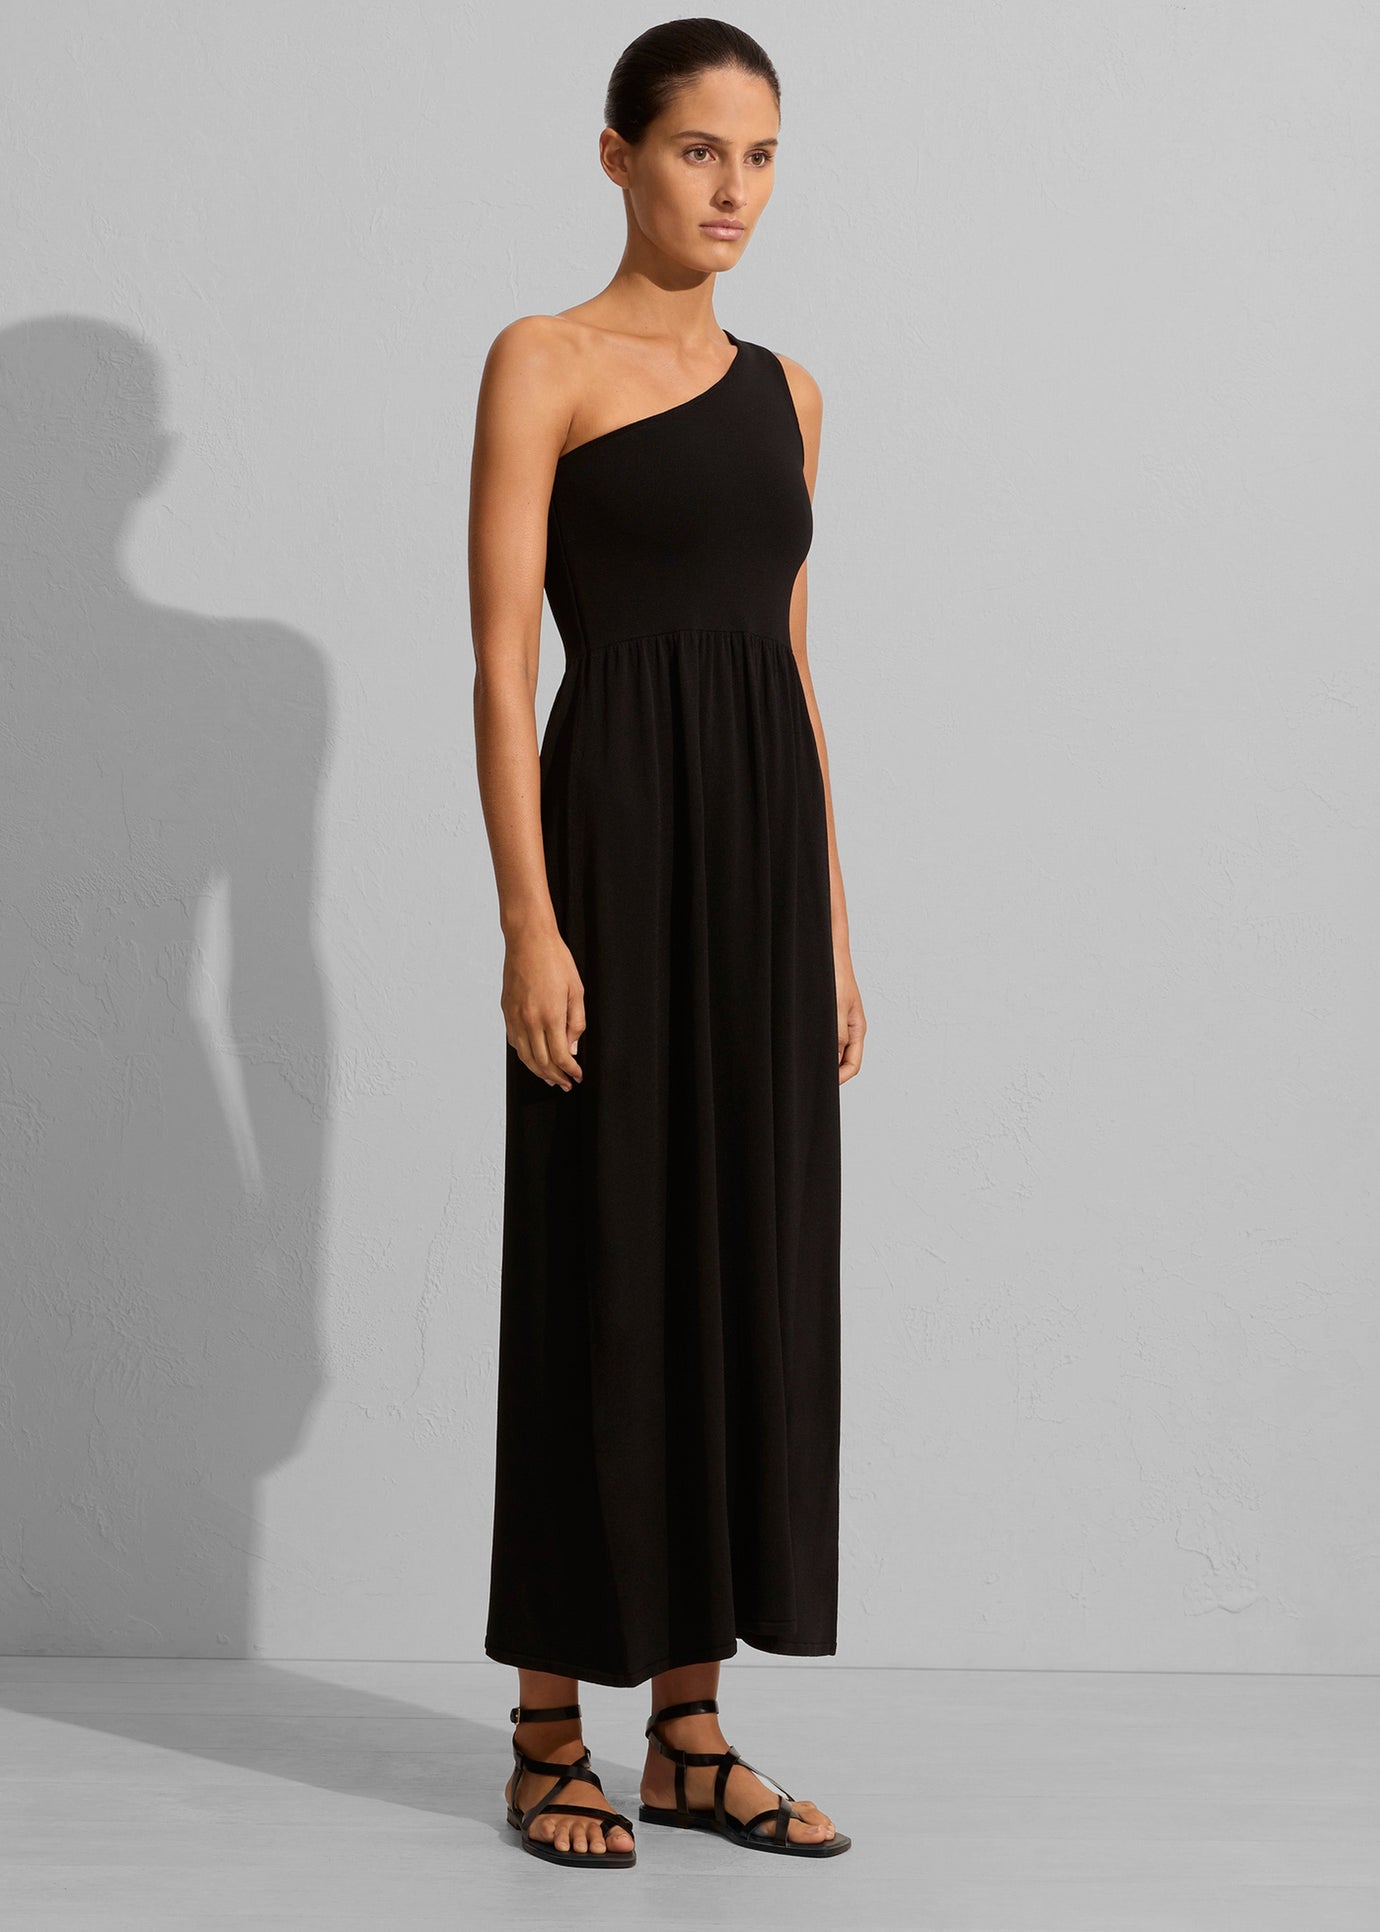 Matteau Asymmetric Knit Dress - Black